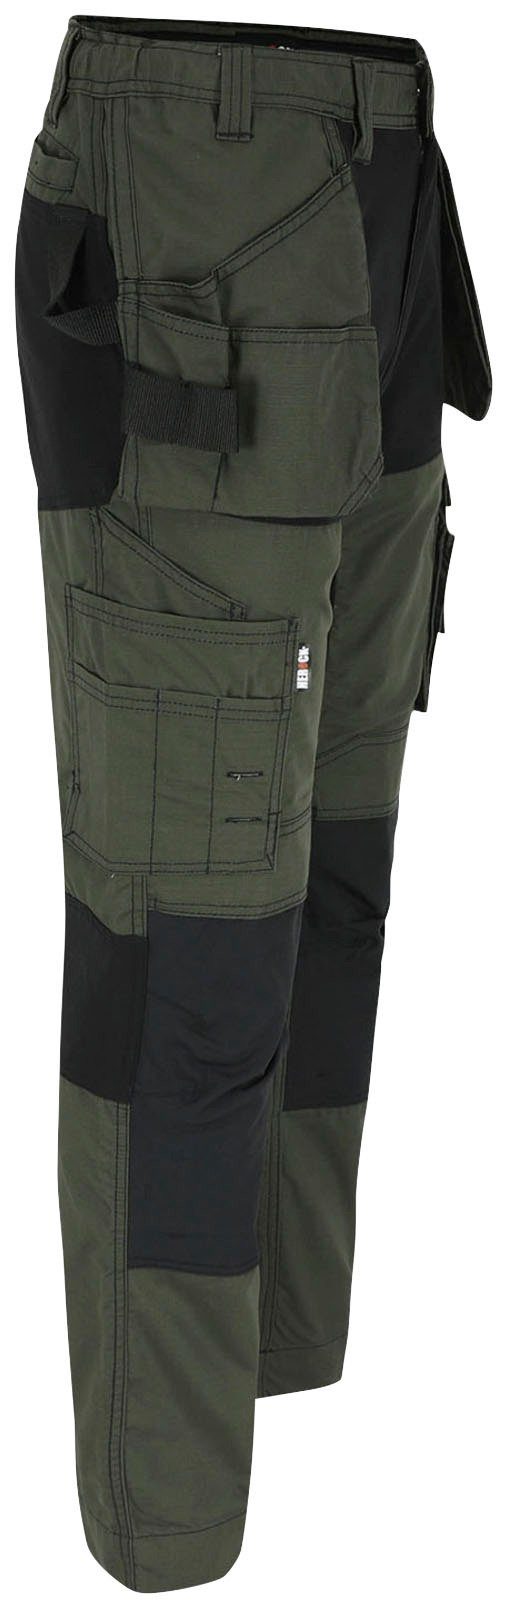 Nageltaschen Hose und Multi-Pocket-Hose Arbeitshose festen khaki mit 4-Wege-Stretch-Teilen Spector 2 Herock